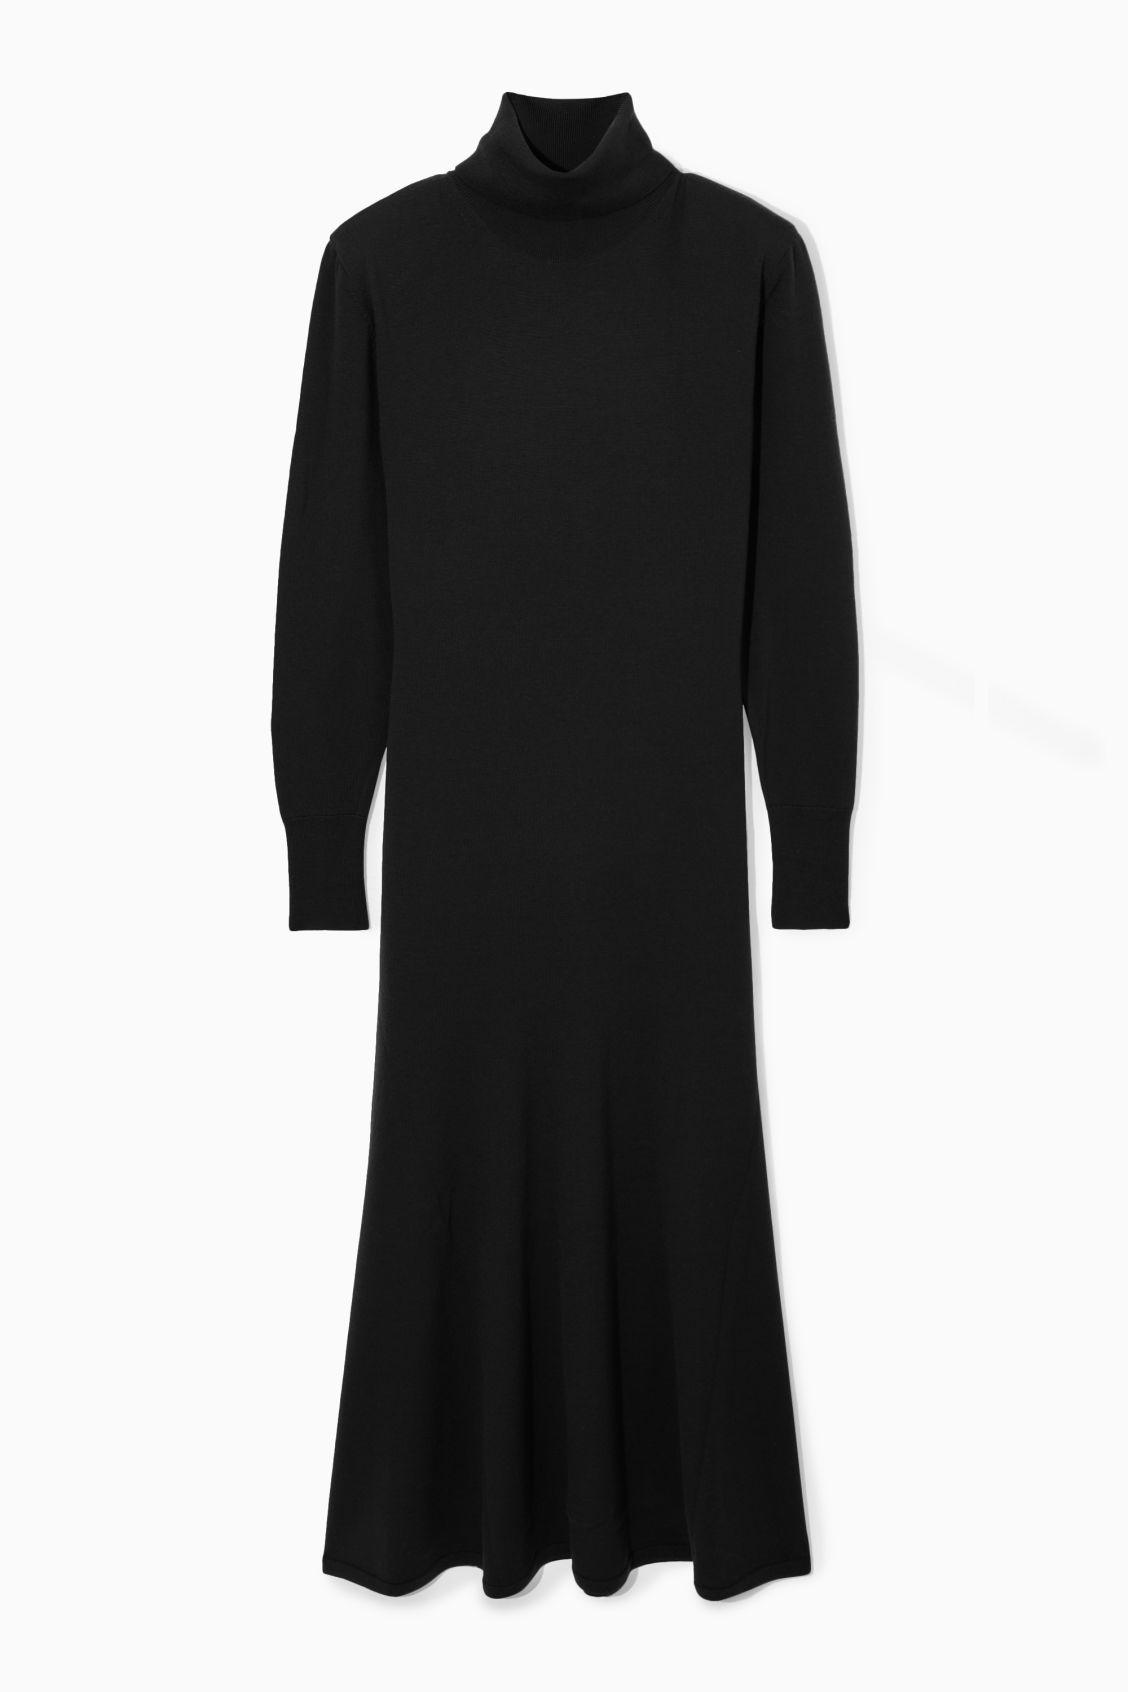 Women's Merino Wool Sleeveless Dress | Smitten Merino